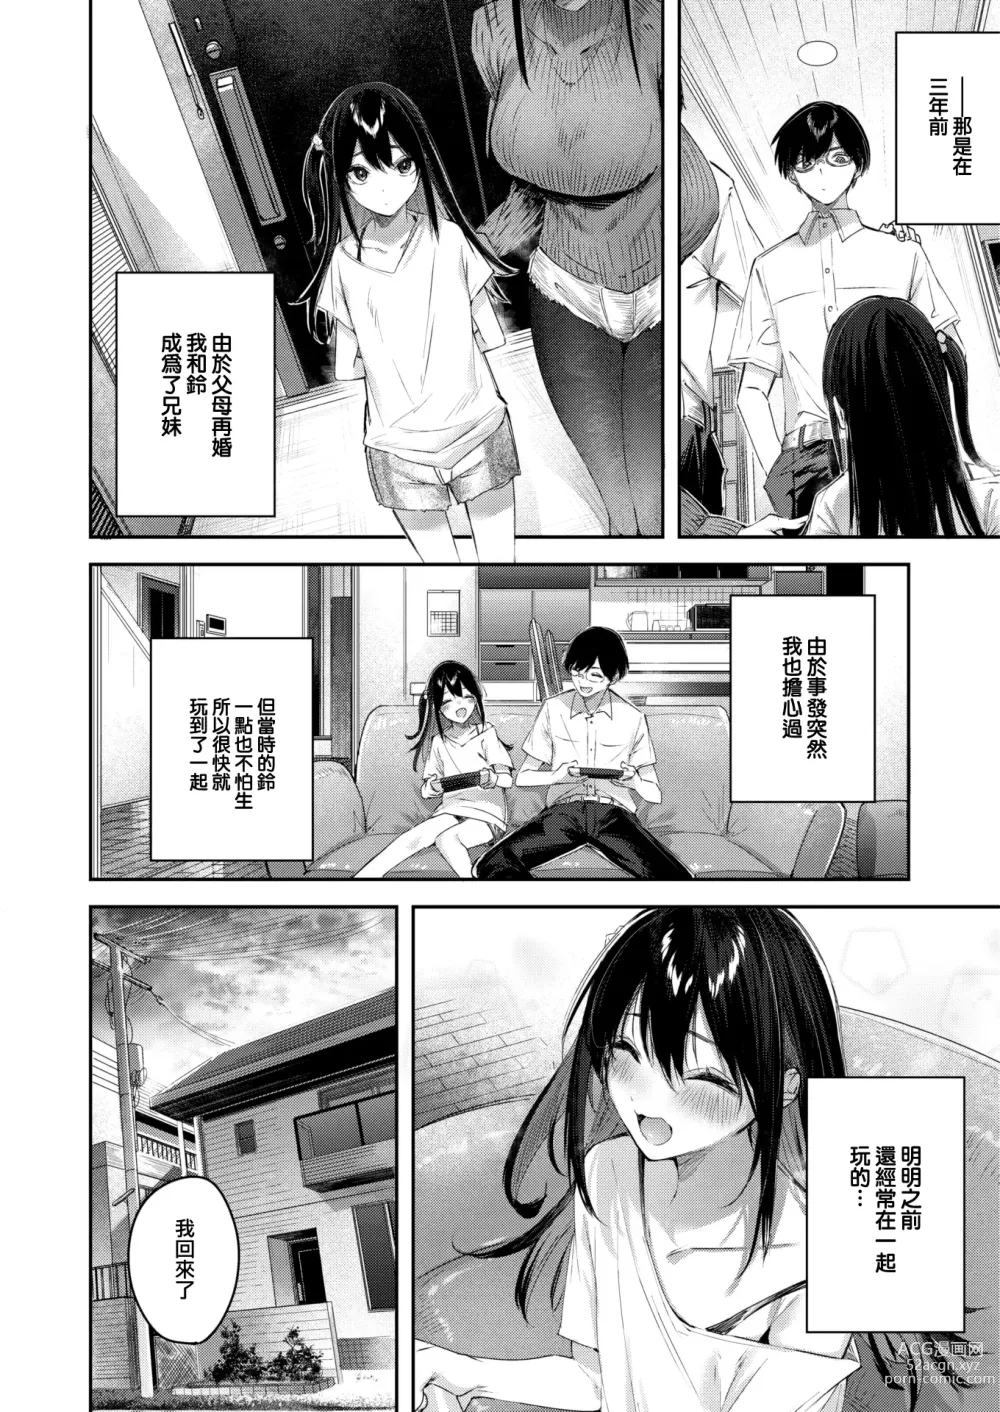 Page 6 of doujinshi Imouto Pudding